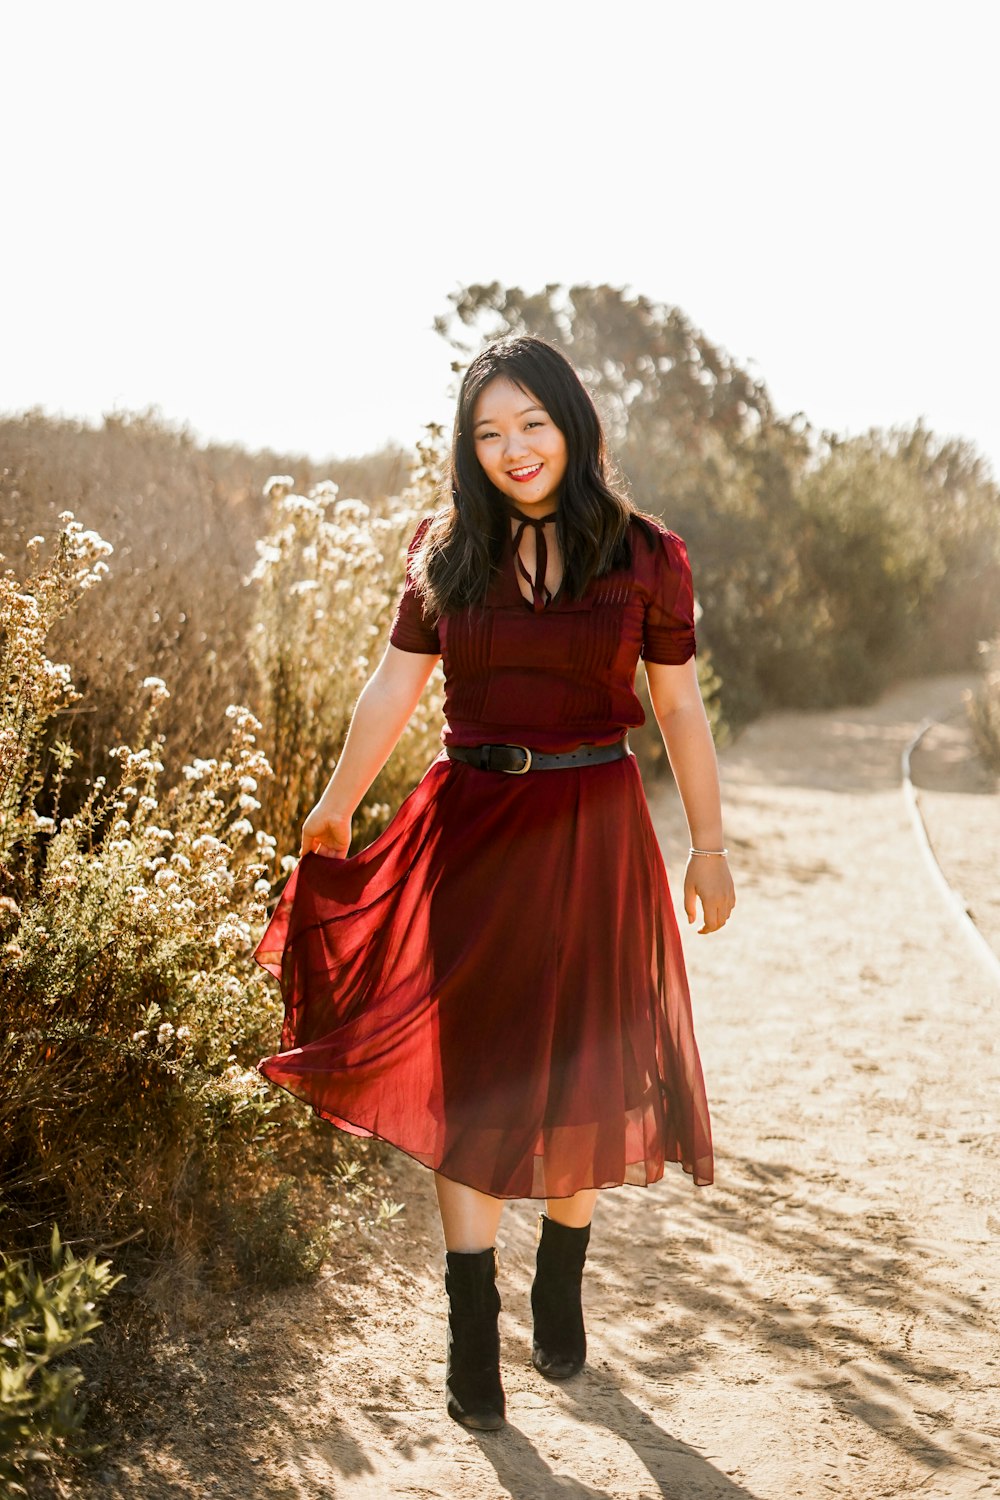 Eine Frau in einem roten Kleid geht eine unbefestigte Straße entlang